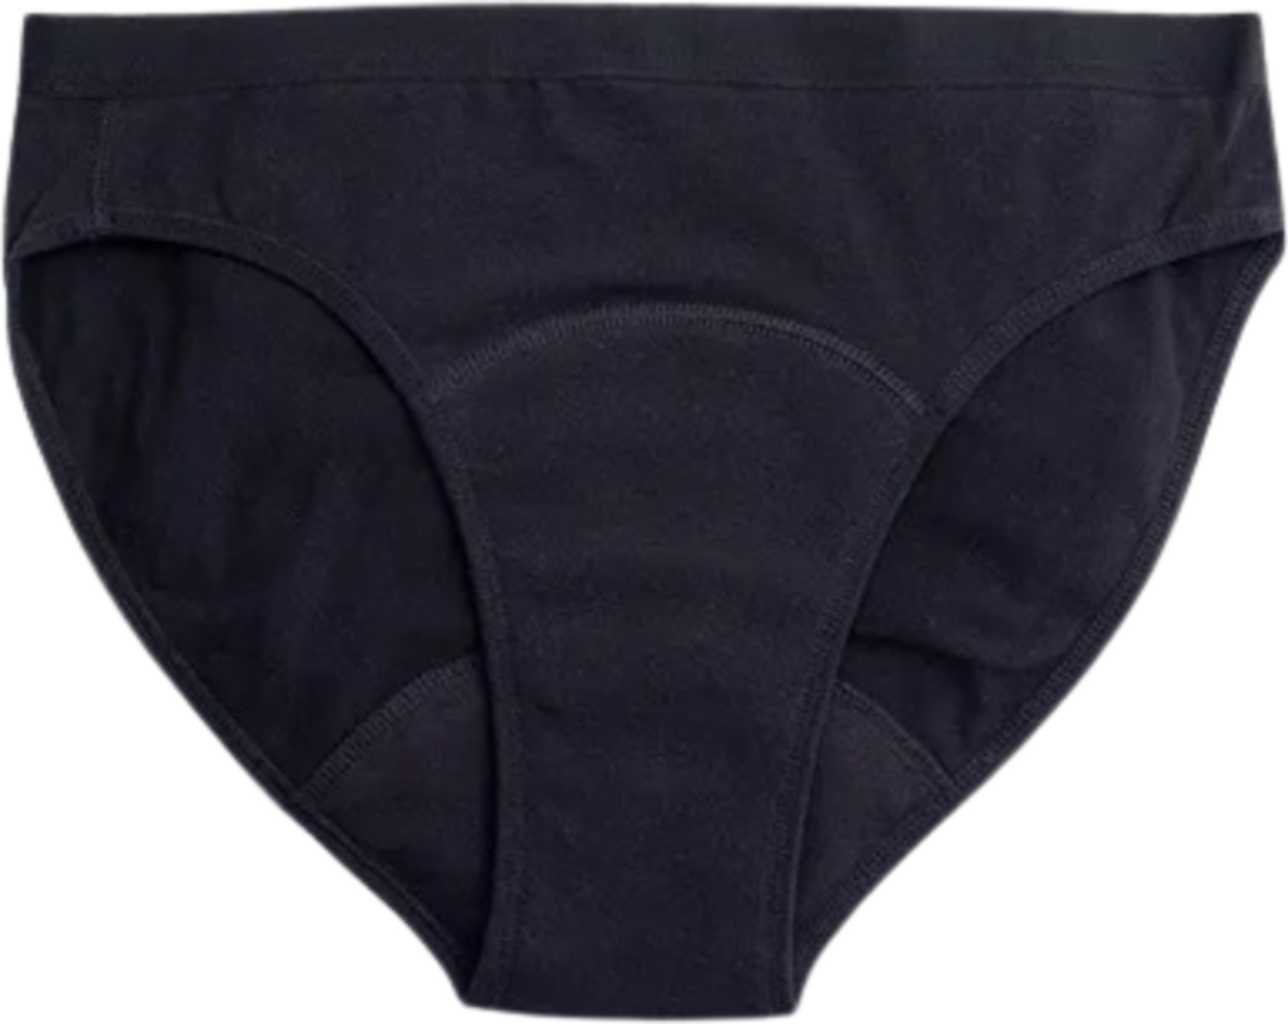 Imse High Waist Period Underwear, Medium Flow - Black - Ecco Verde Online  Shop